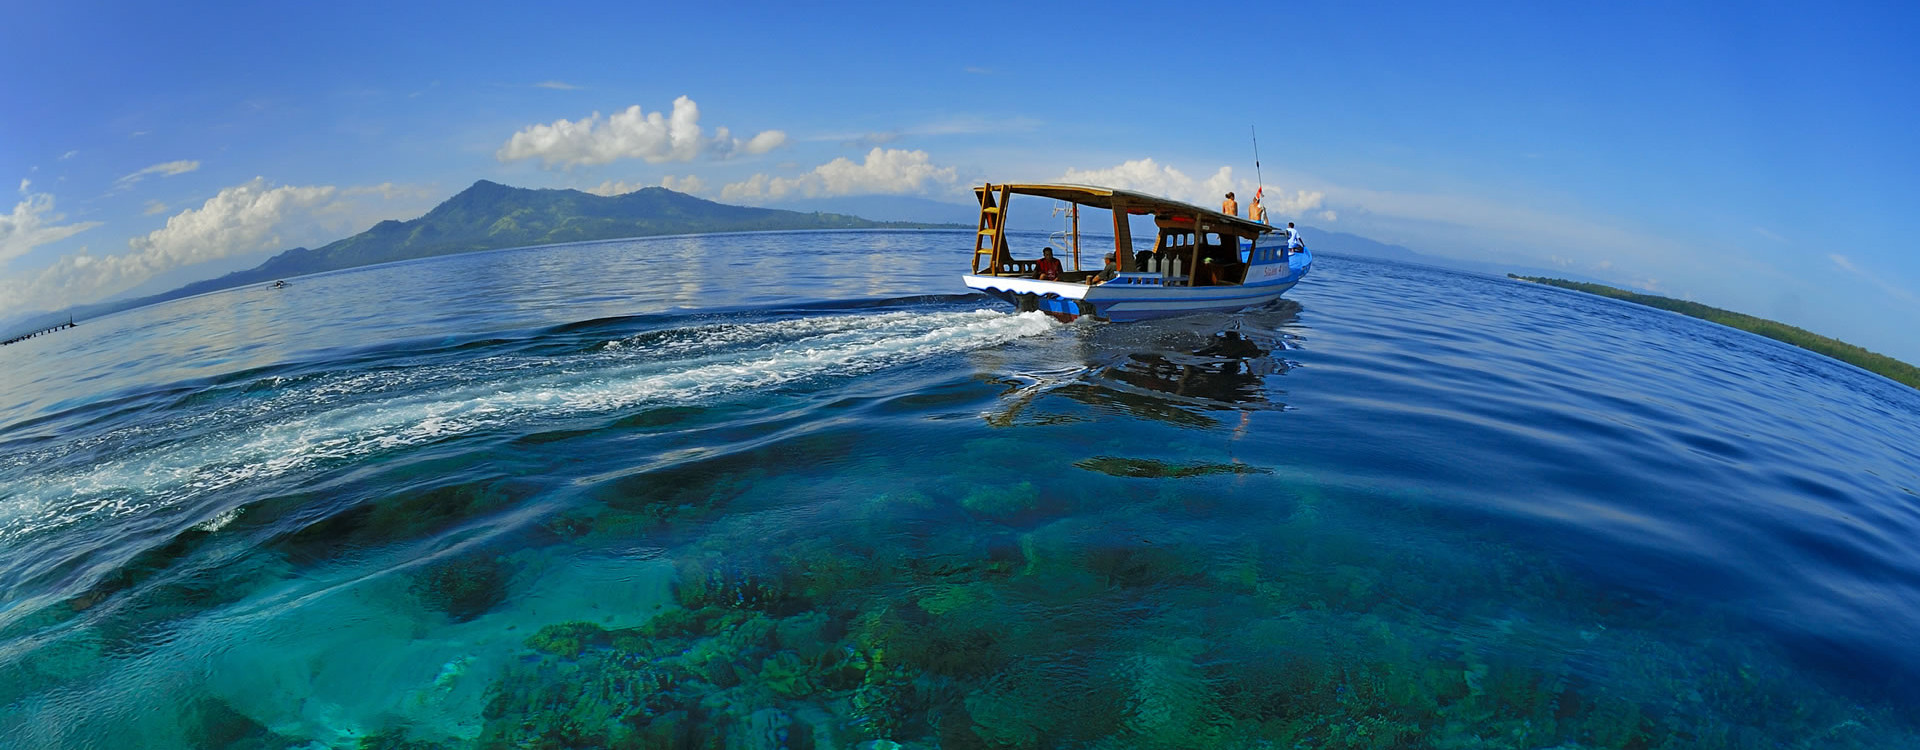 Lokasi Dan Harga Tiket Masuk Taman Laut Bunaken